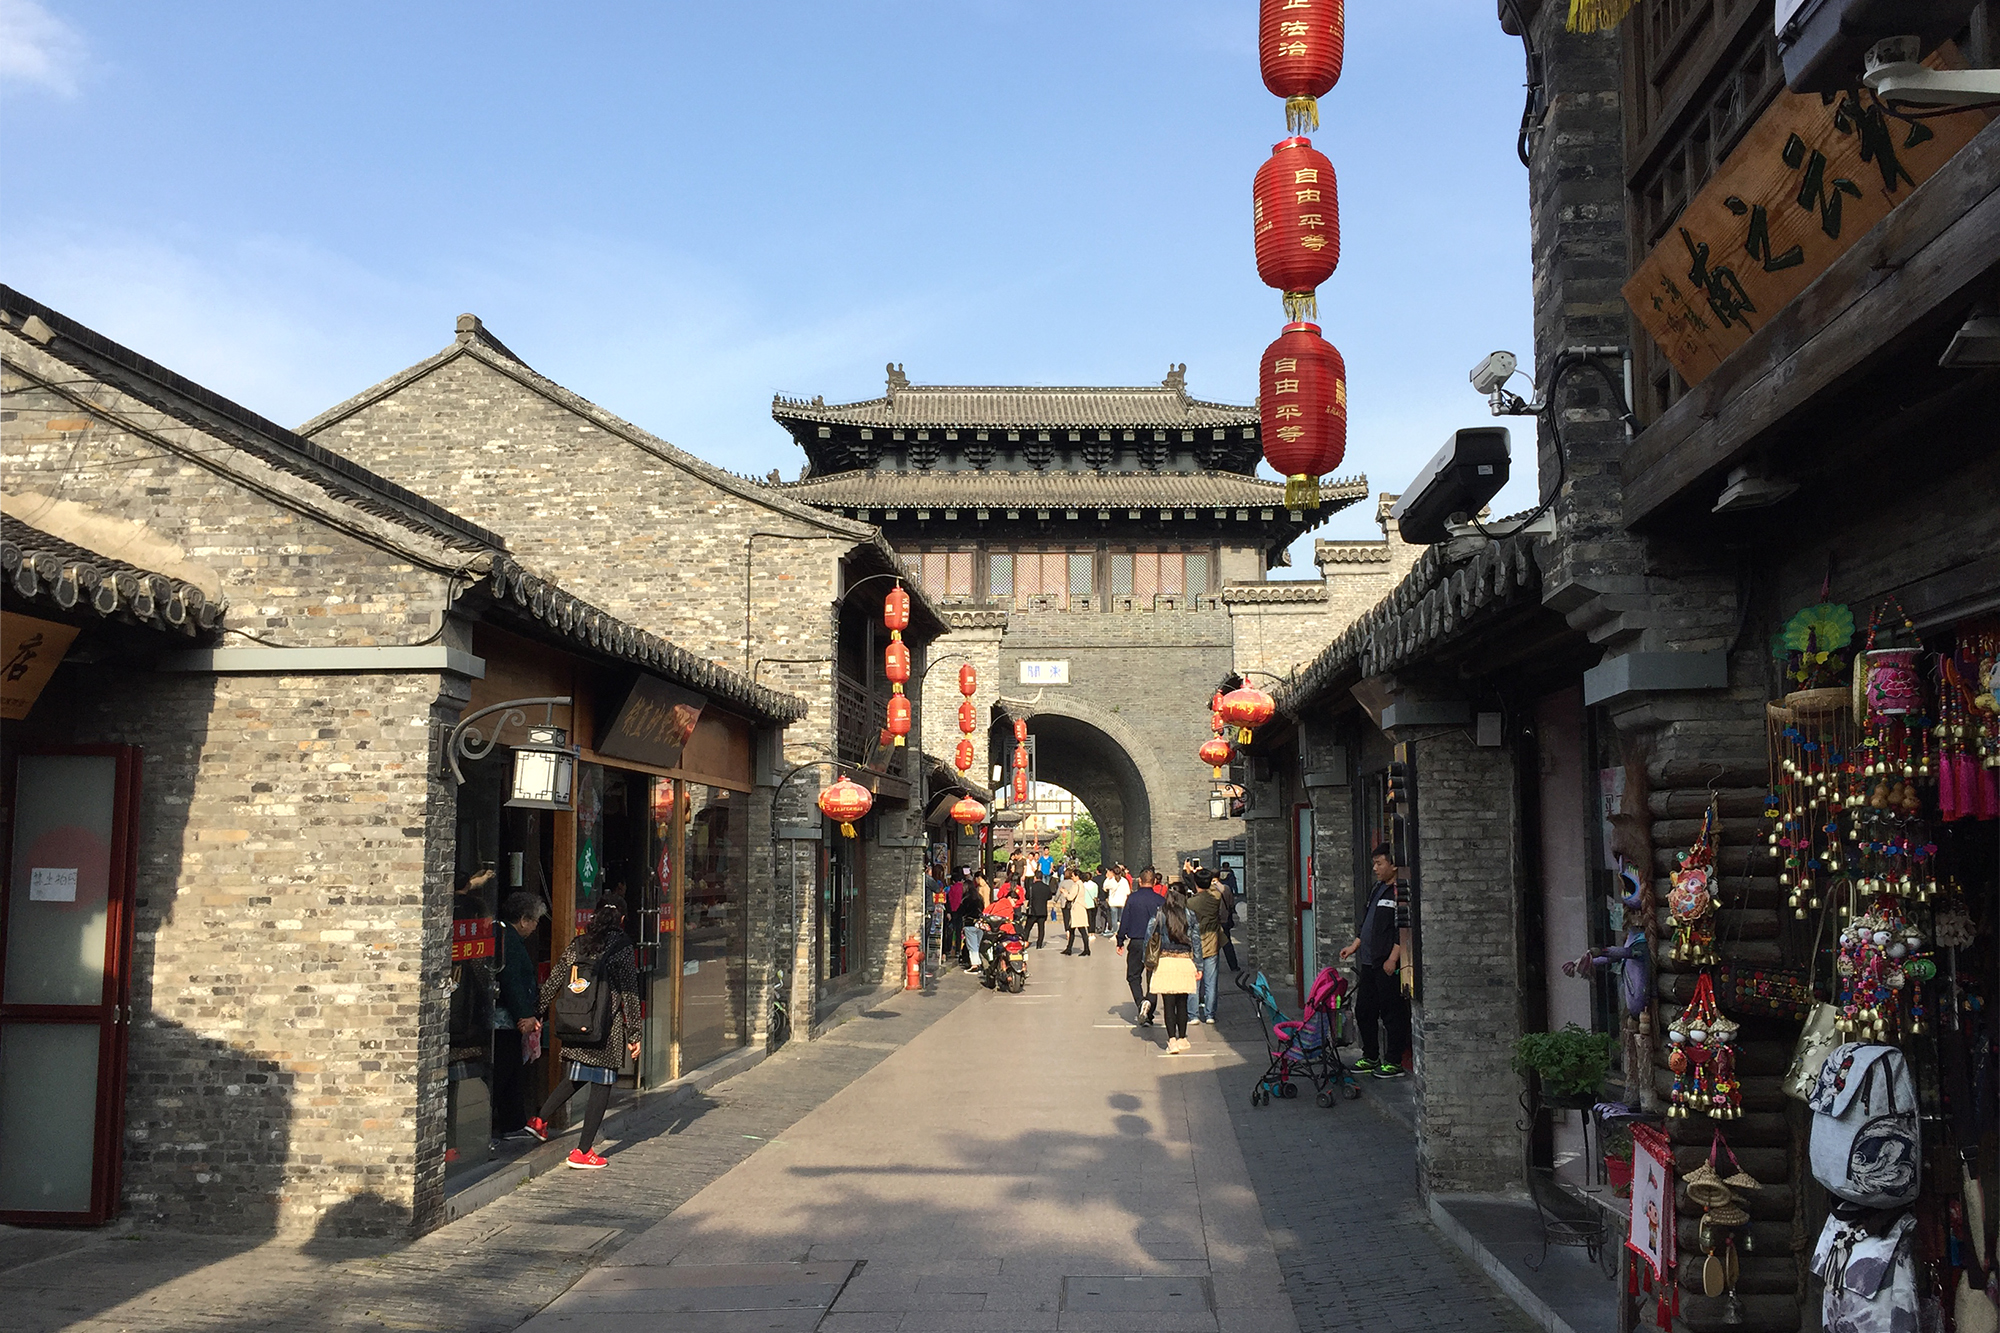 扬州旅游必去的老街 中国十大历史文化名街 与南京的夫子庙很像